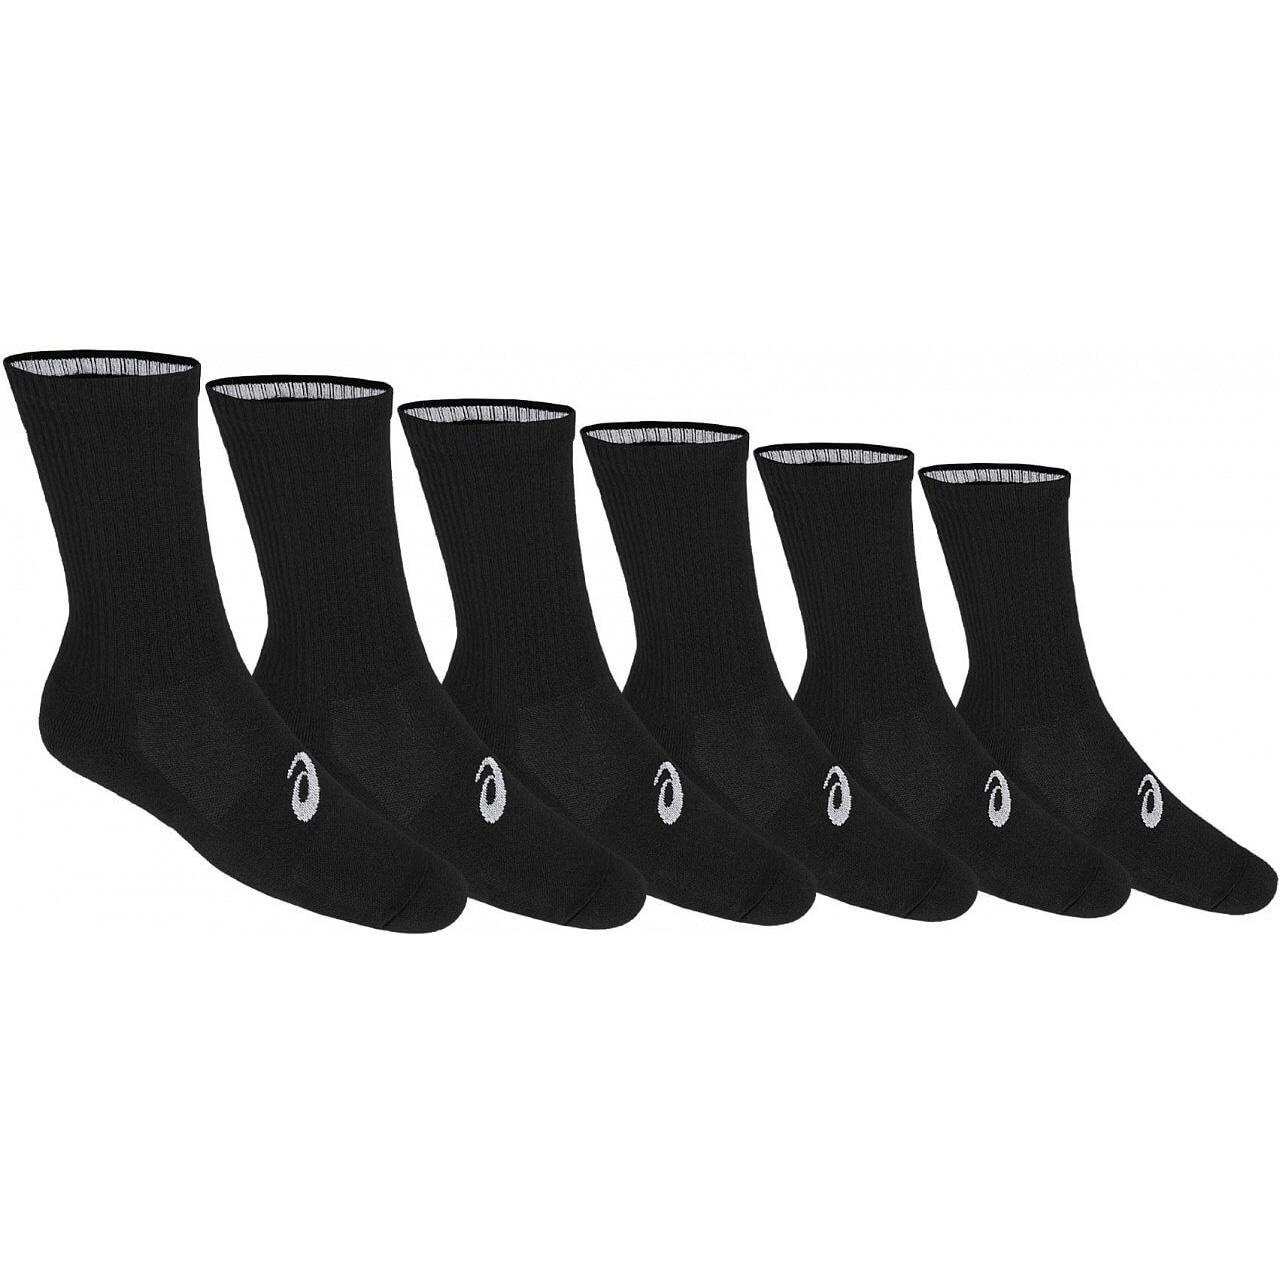 Asics Crew Socks (6 Pairs) - Black - Tennisnuts.com